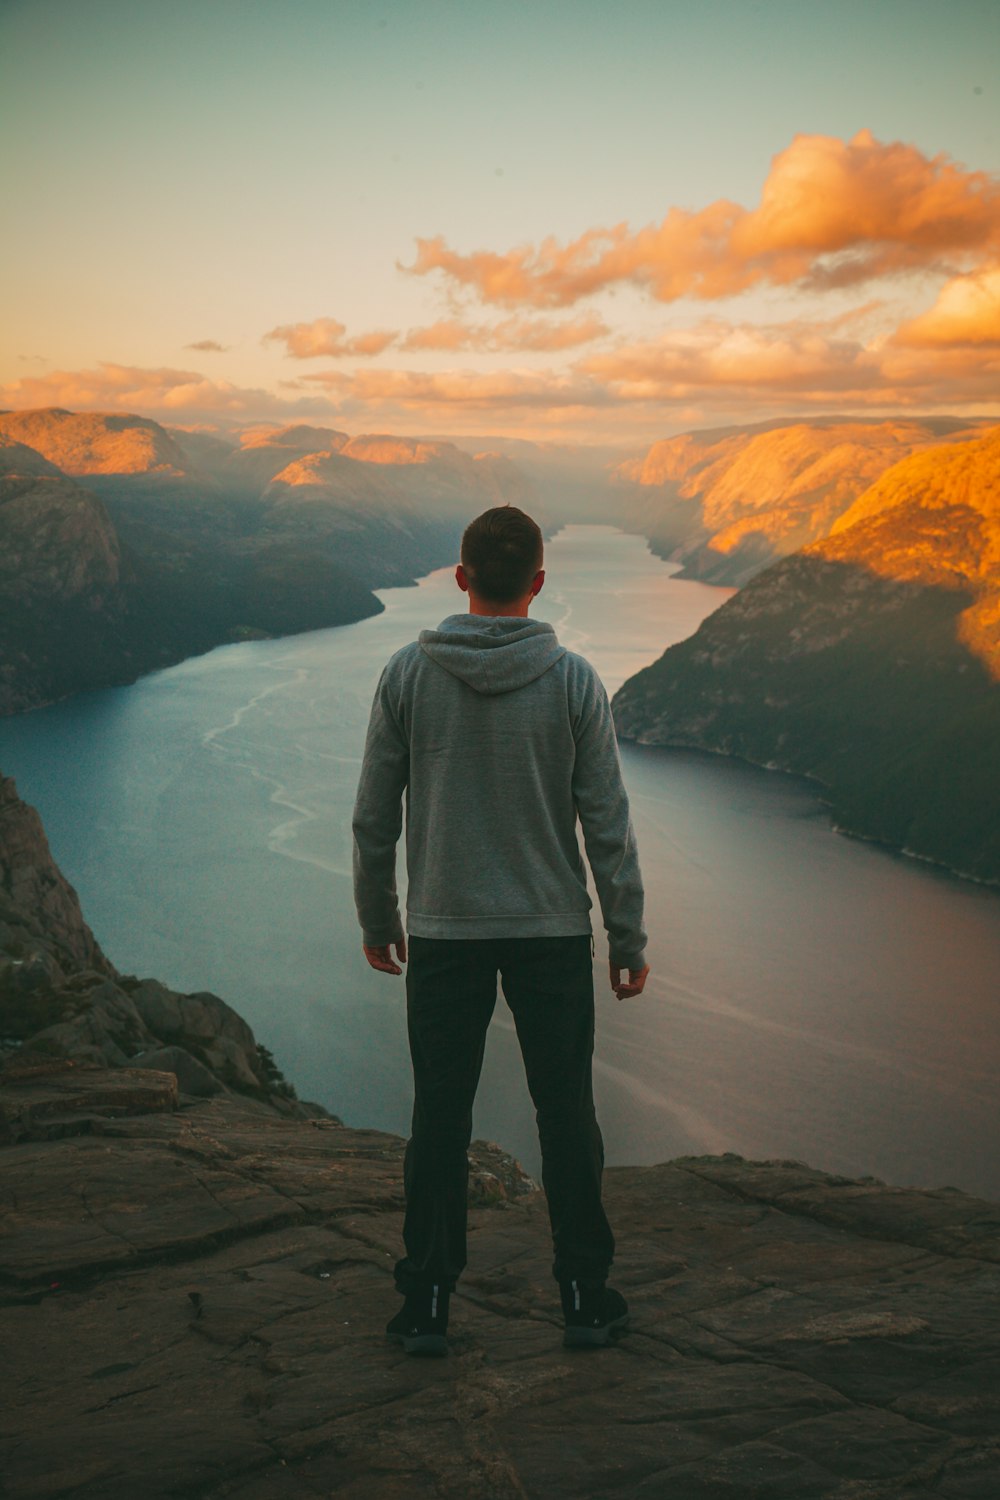 Mann im grauen Kapuzenpullover steht auf dem Berg und schaut auf den Fluss